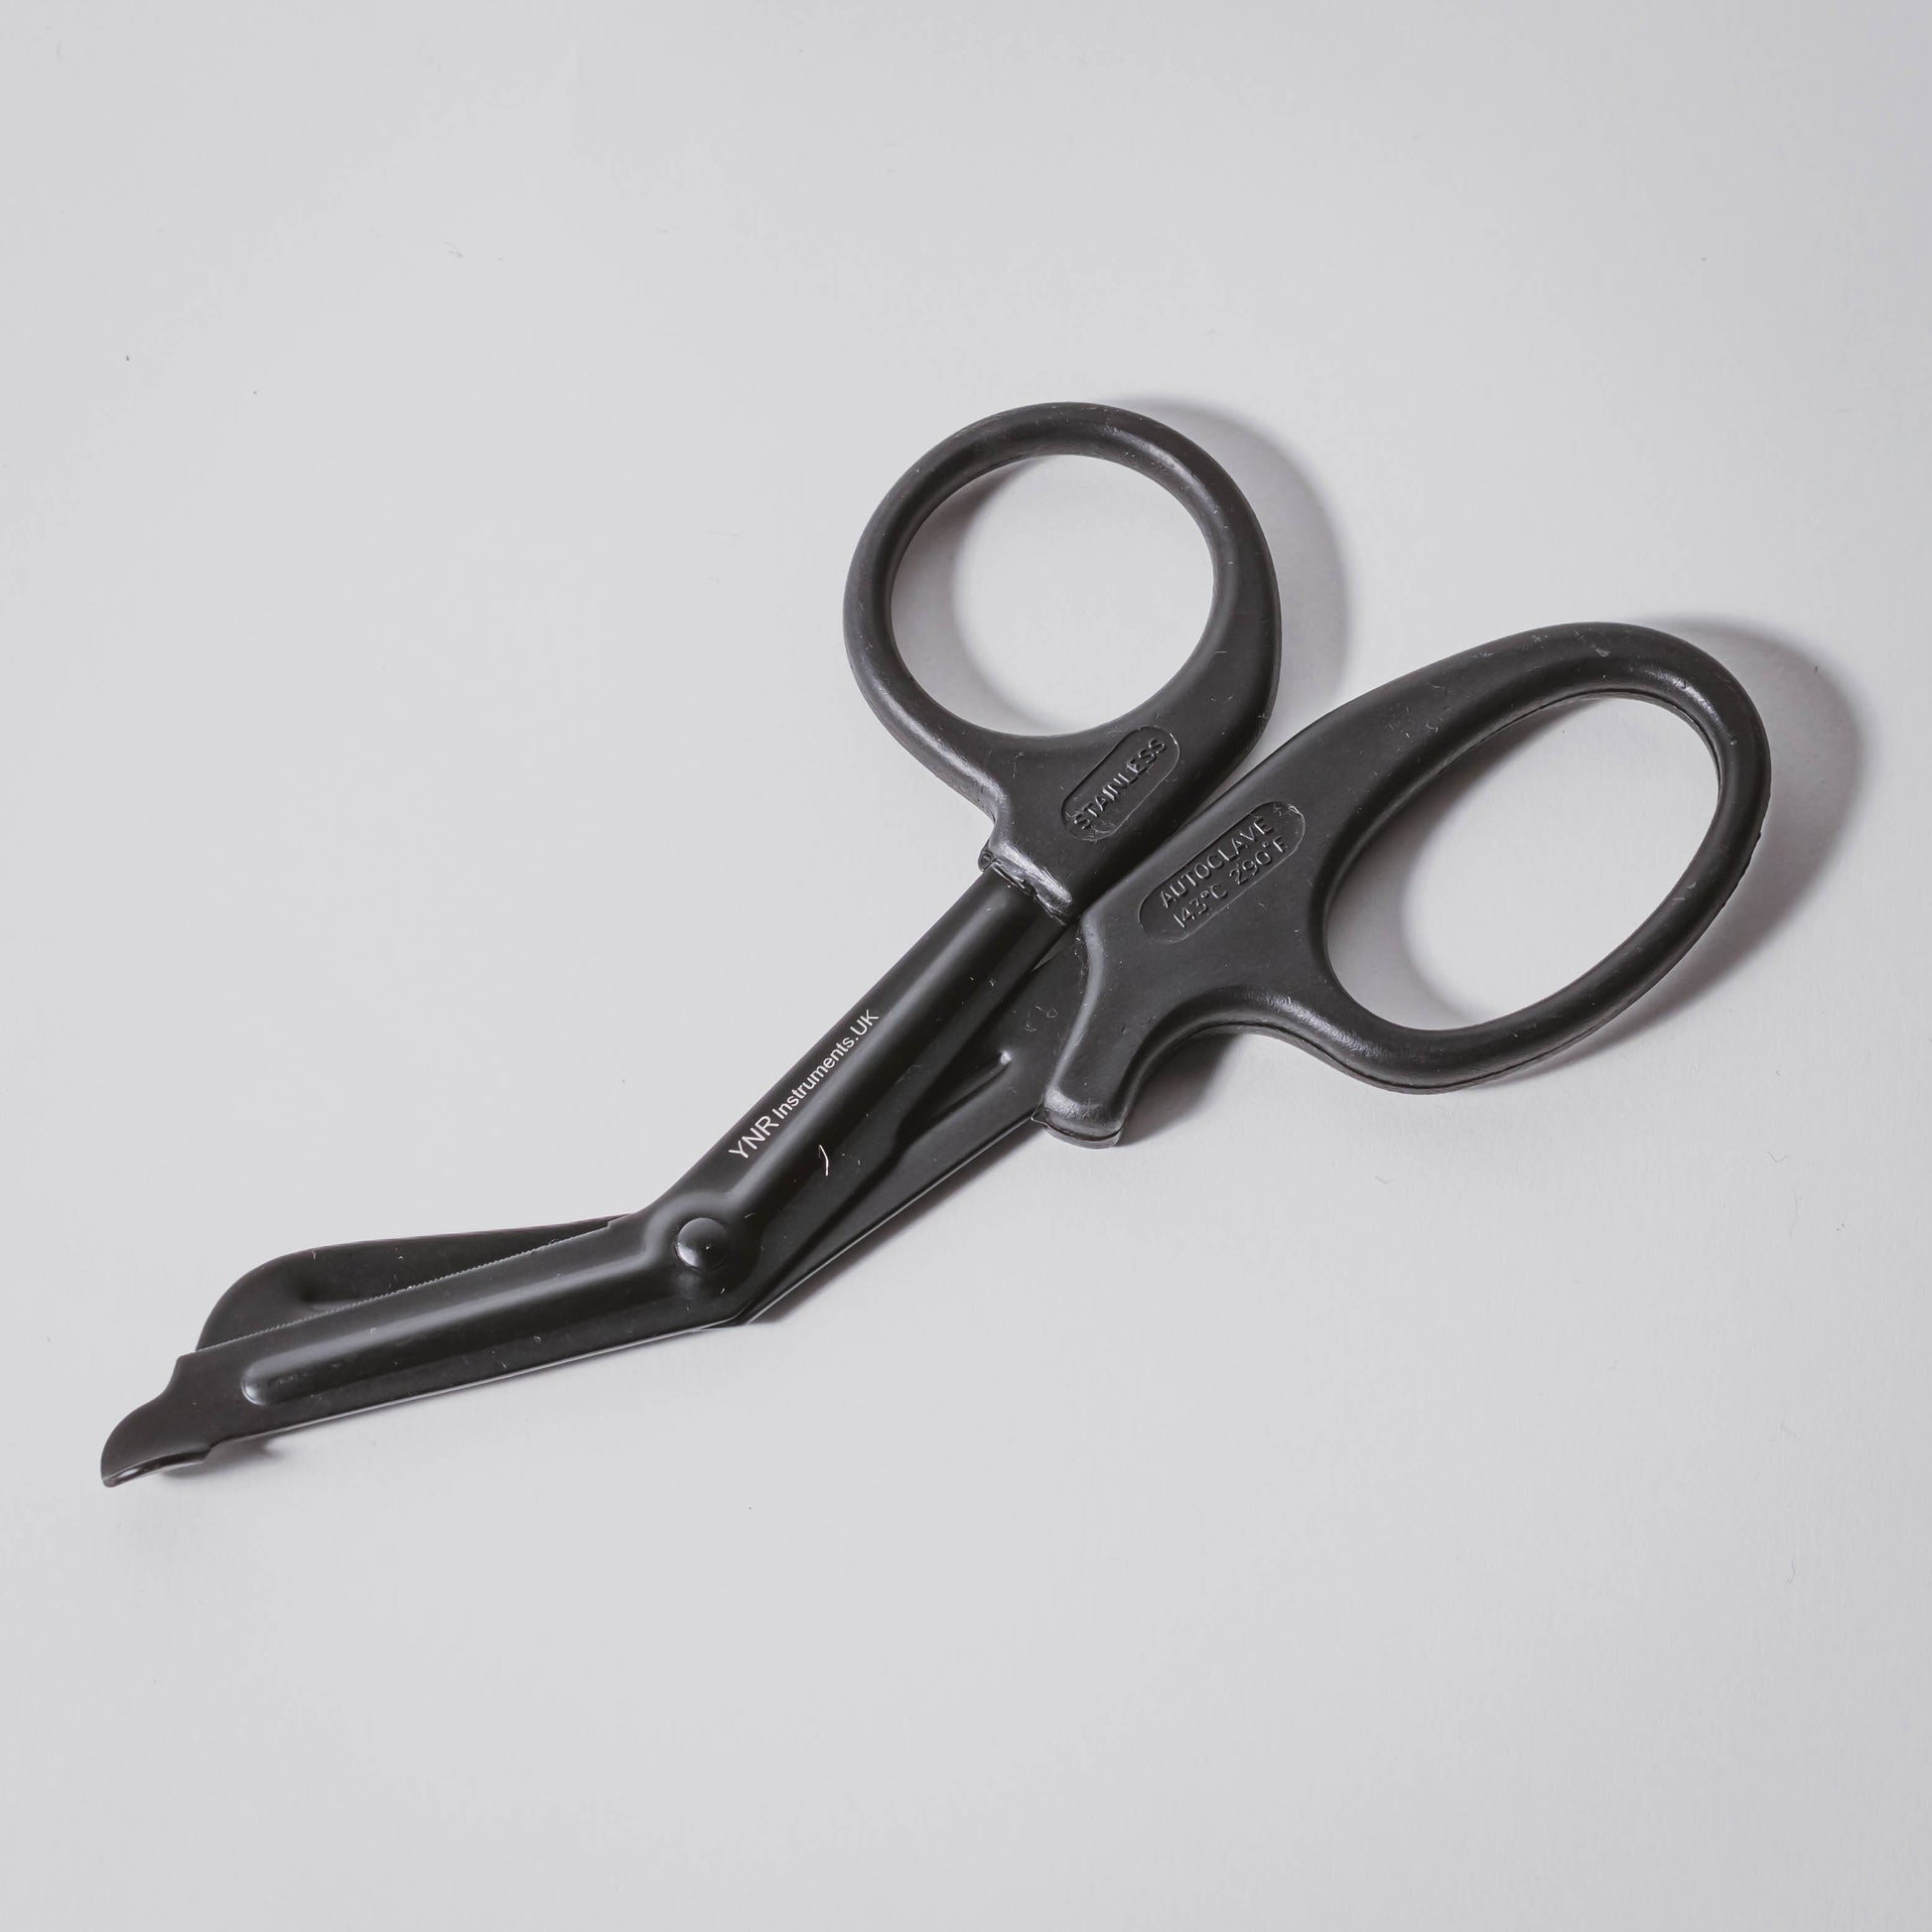 EMT Safety Shears EMT shears scissors All black 